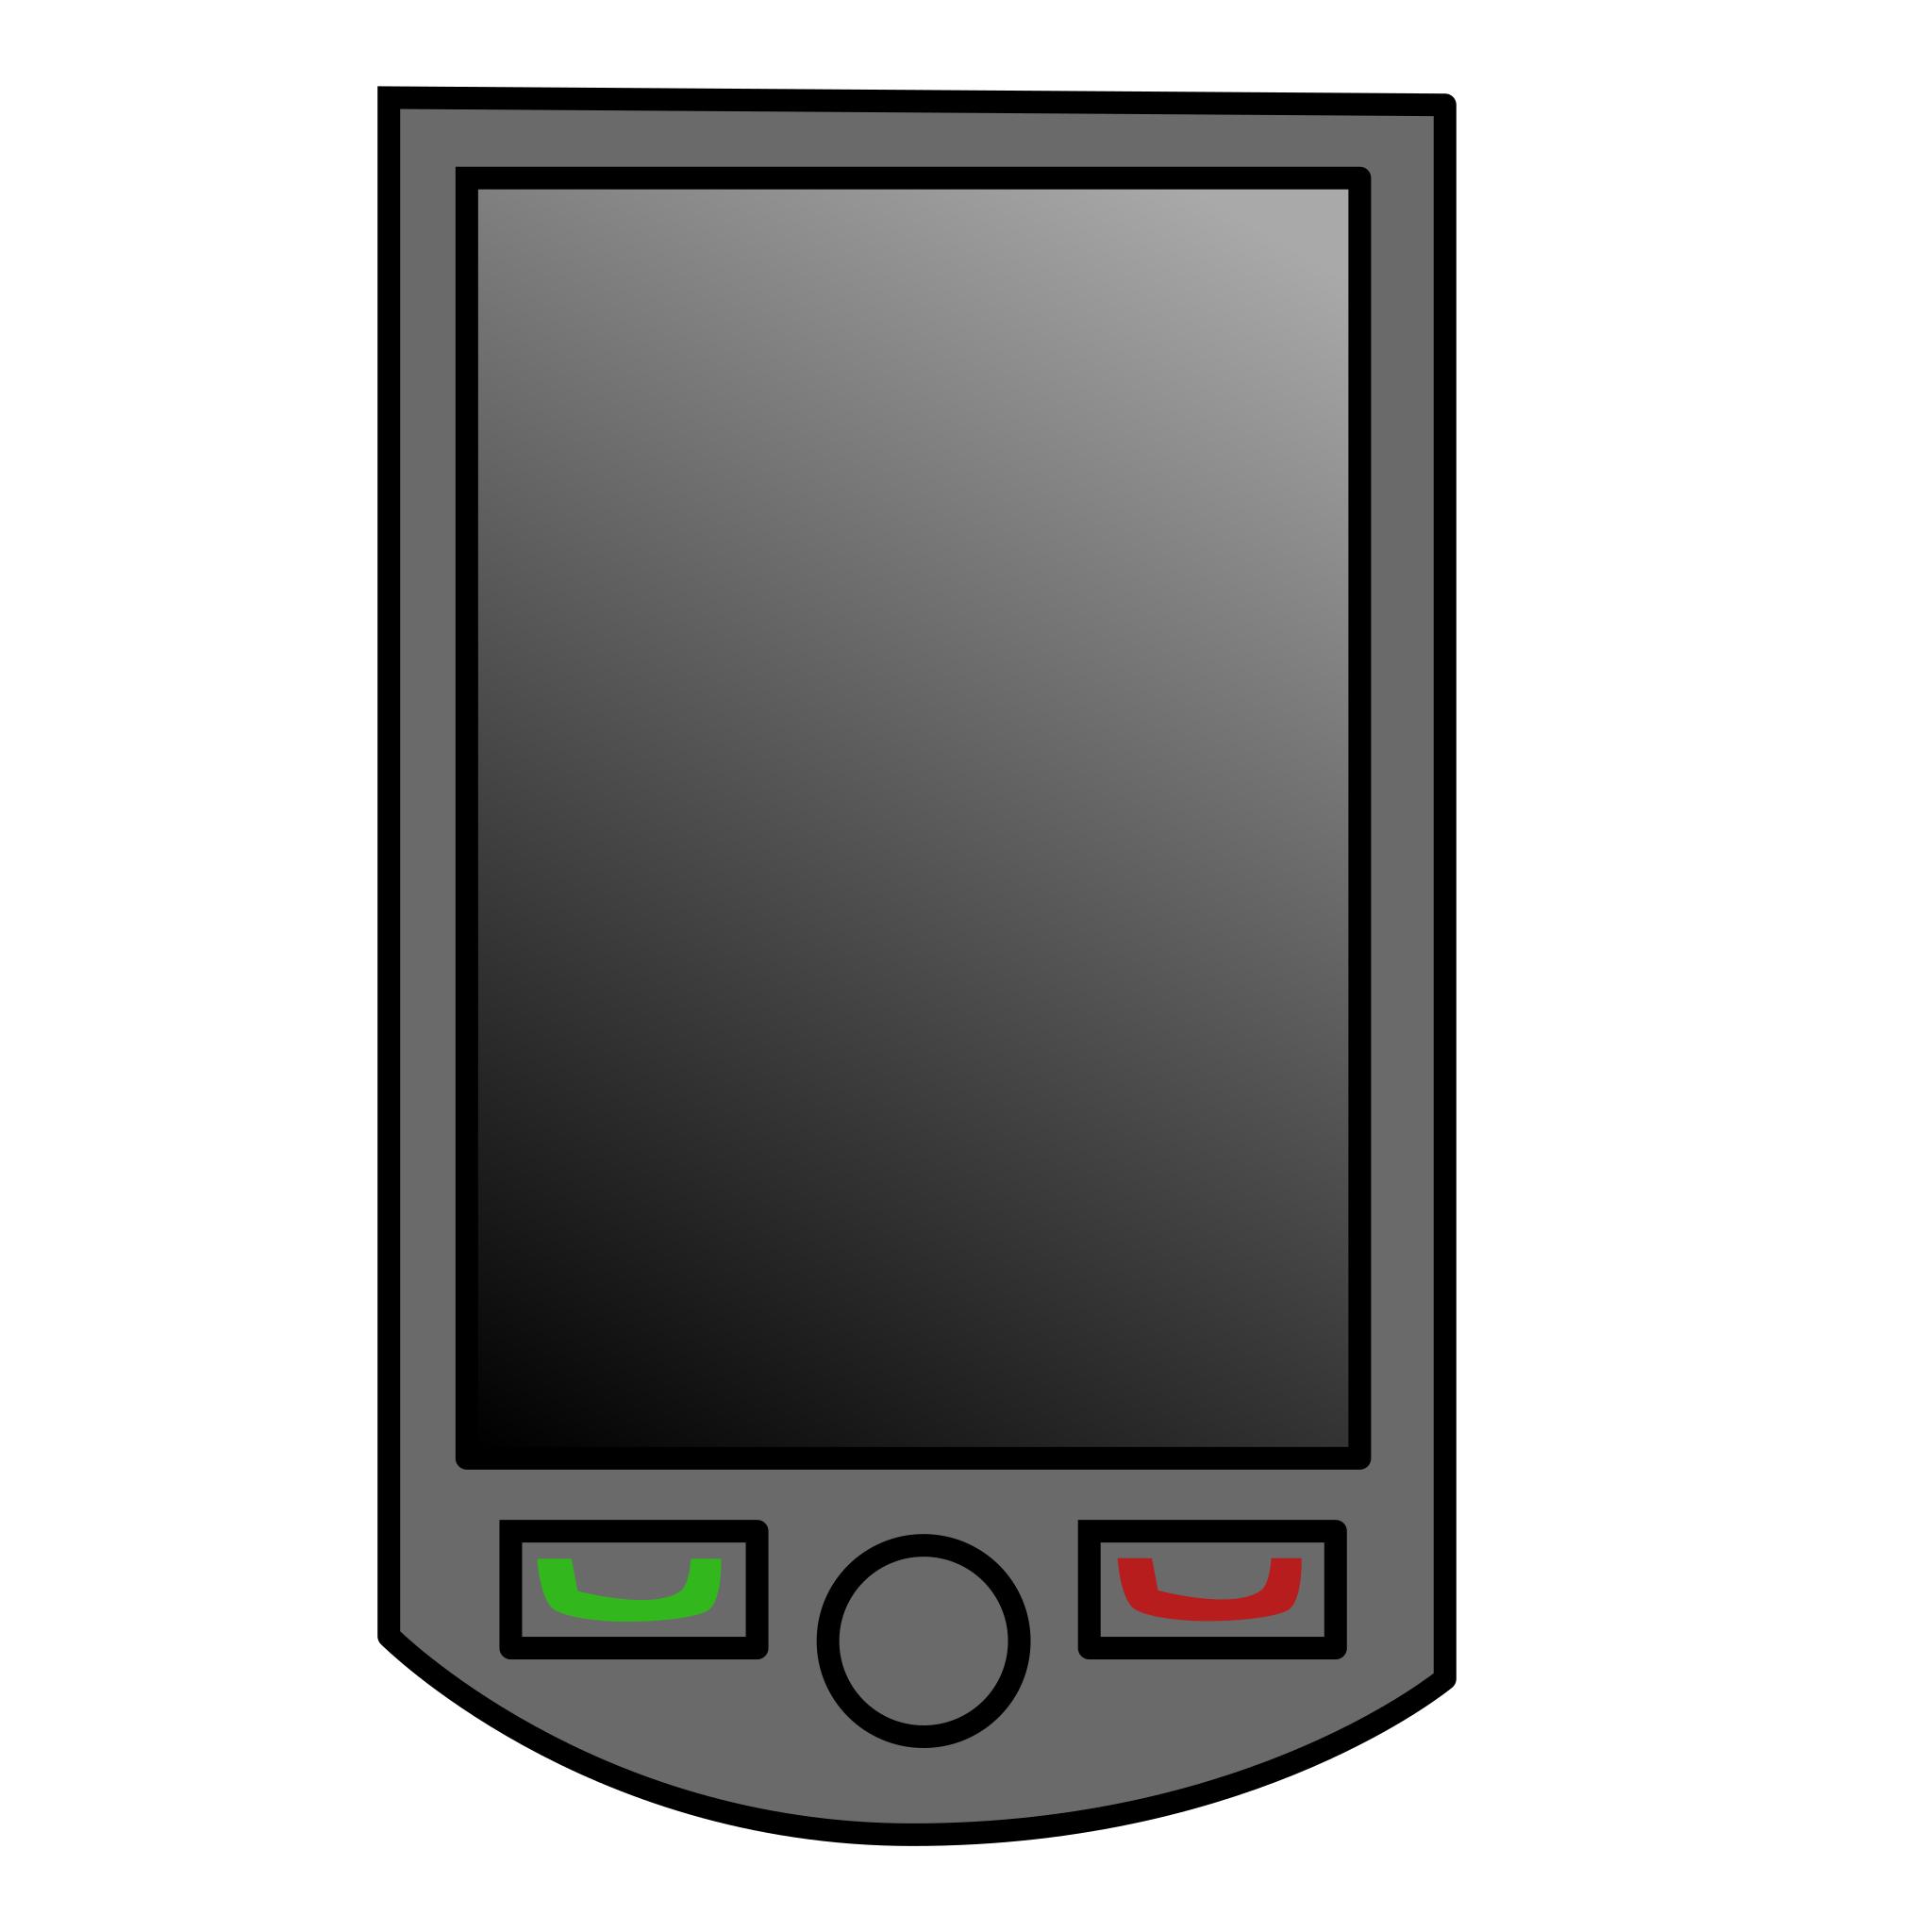 PDA - Personal Digital Assistant - КПК - Карманный персональный компьютер